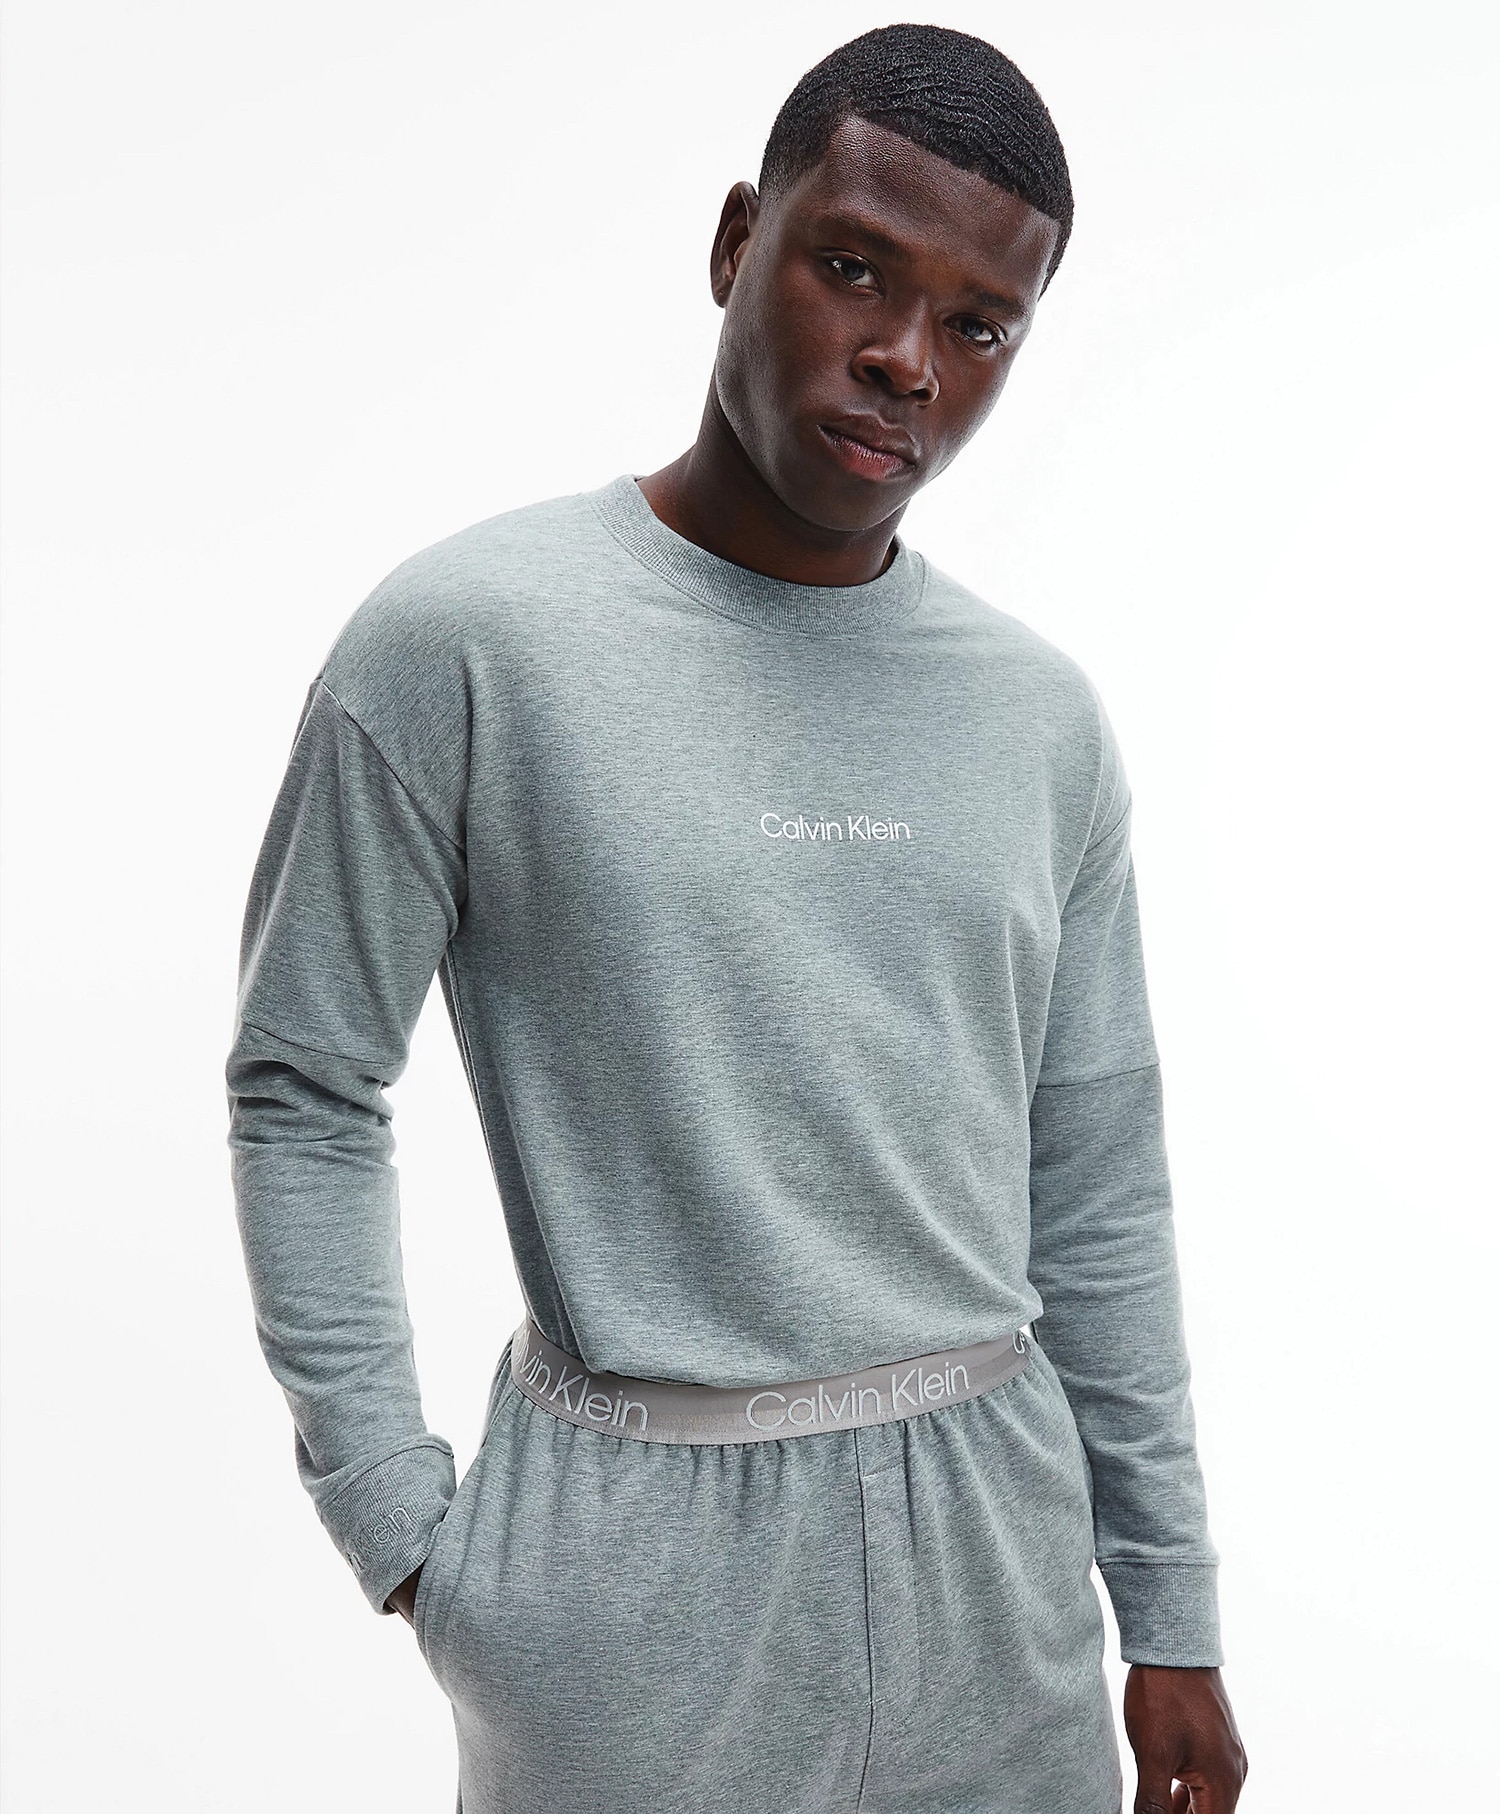 Calvin Klein L/S Sweatshirt